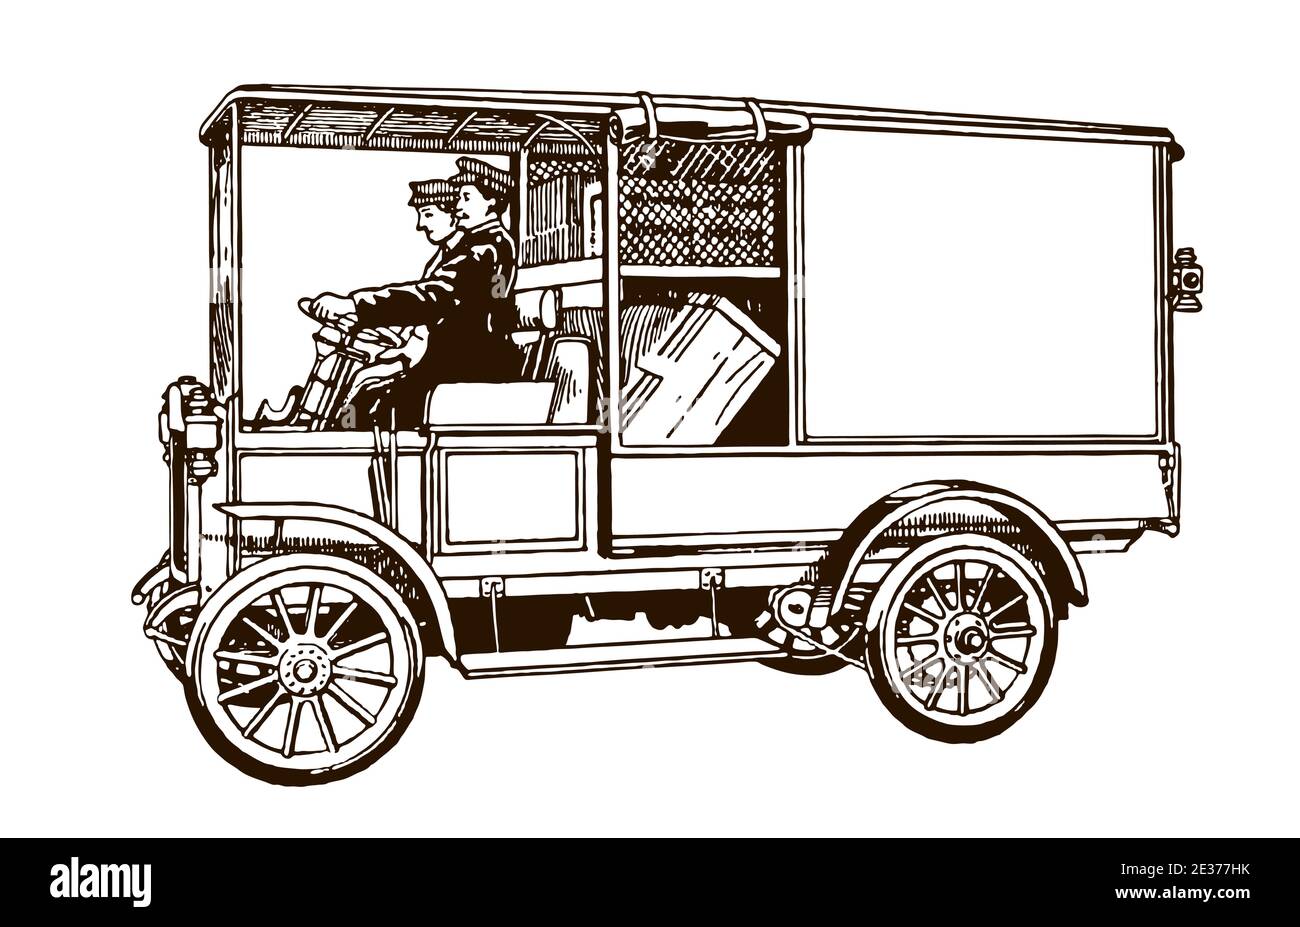 Deux coursiers du début du XXe siècle pilotant une fourgonnette de livraison d'antiquités, en vue latérale Illustration de Vecteur